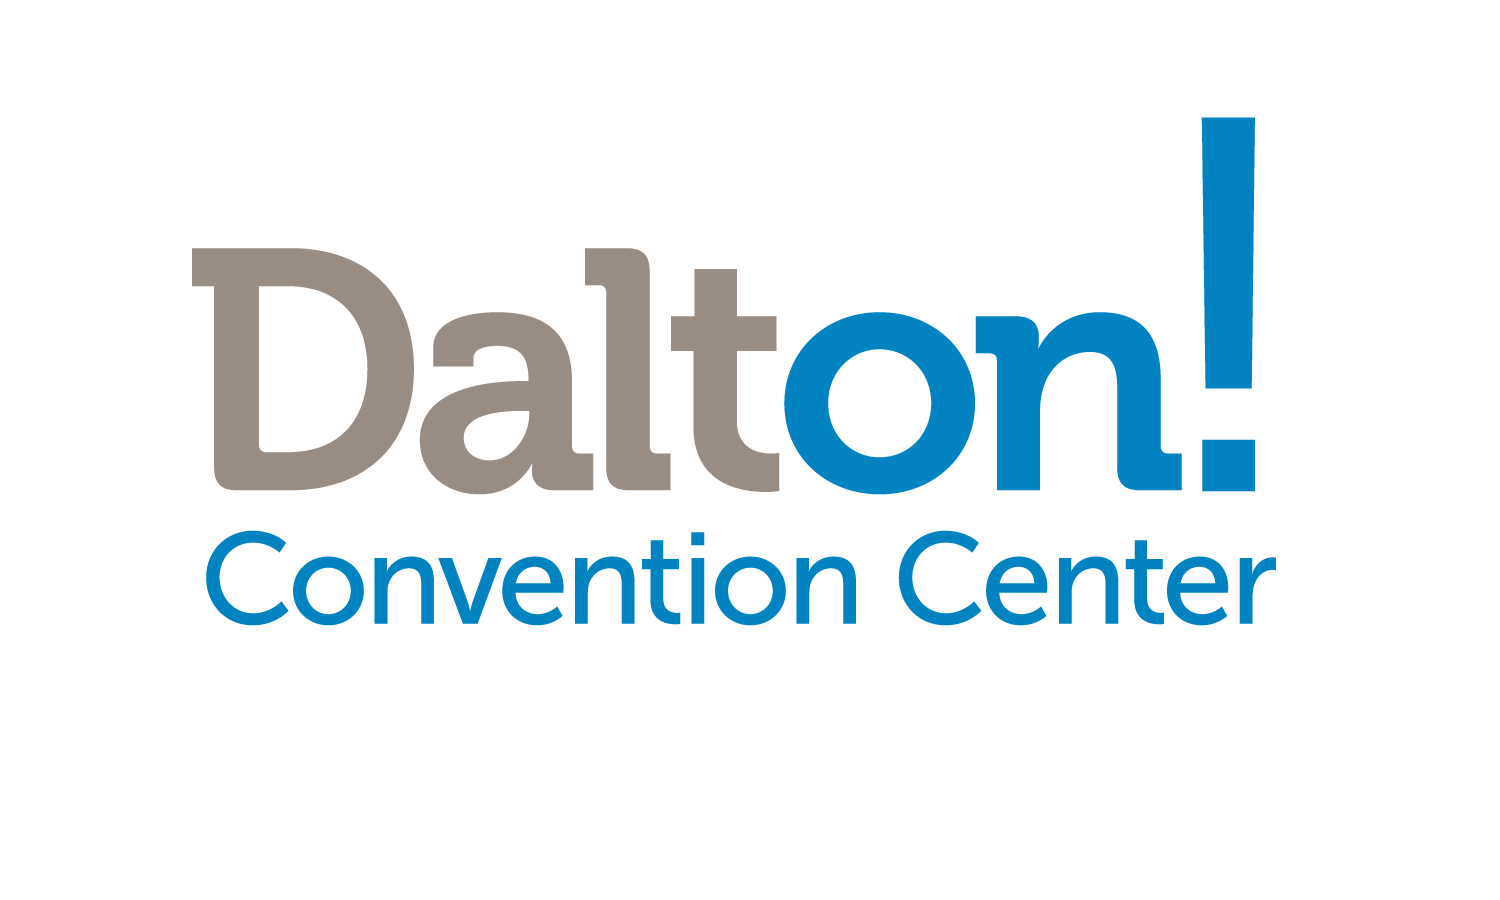 Dalton Logo - Dalton Convention Center logo | Our Logos | Logos, Nintendo wii